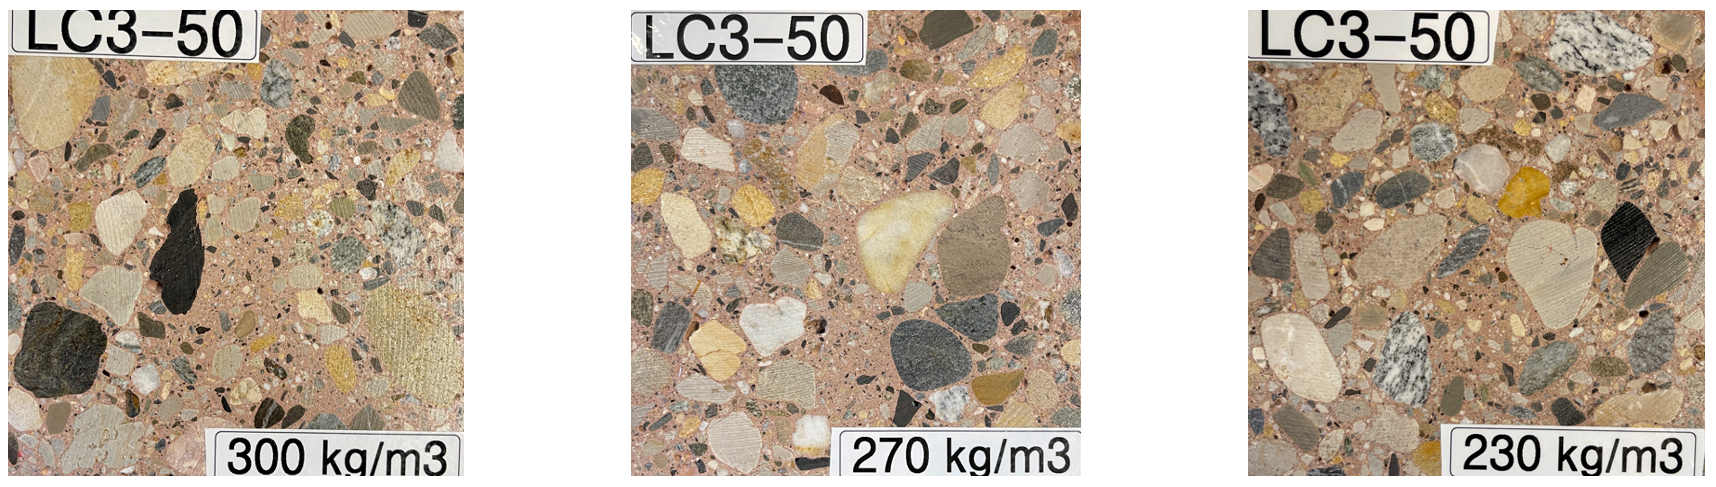 Vergr?sserte Ansicht: Drei Mikroskopaufnahmen des LC3-50 Betons von links nach rechts mit abnehmender Zementgehalt ist eine dichtere Struktur zu erkennen.